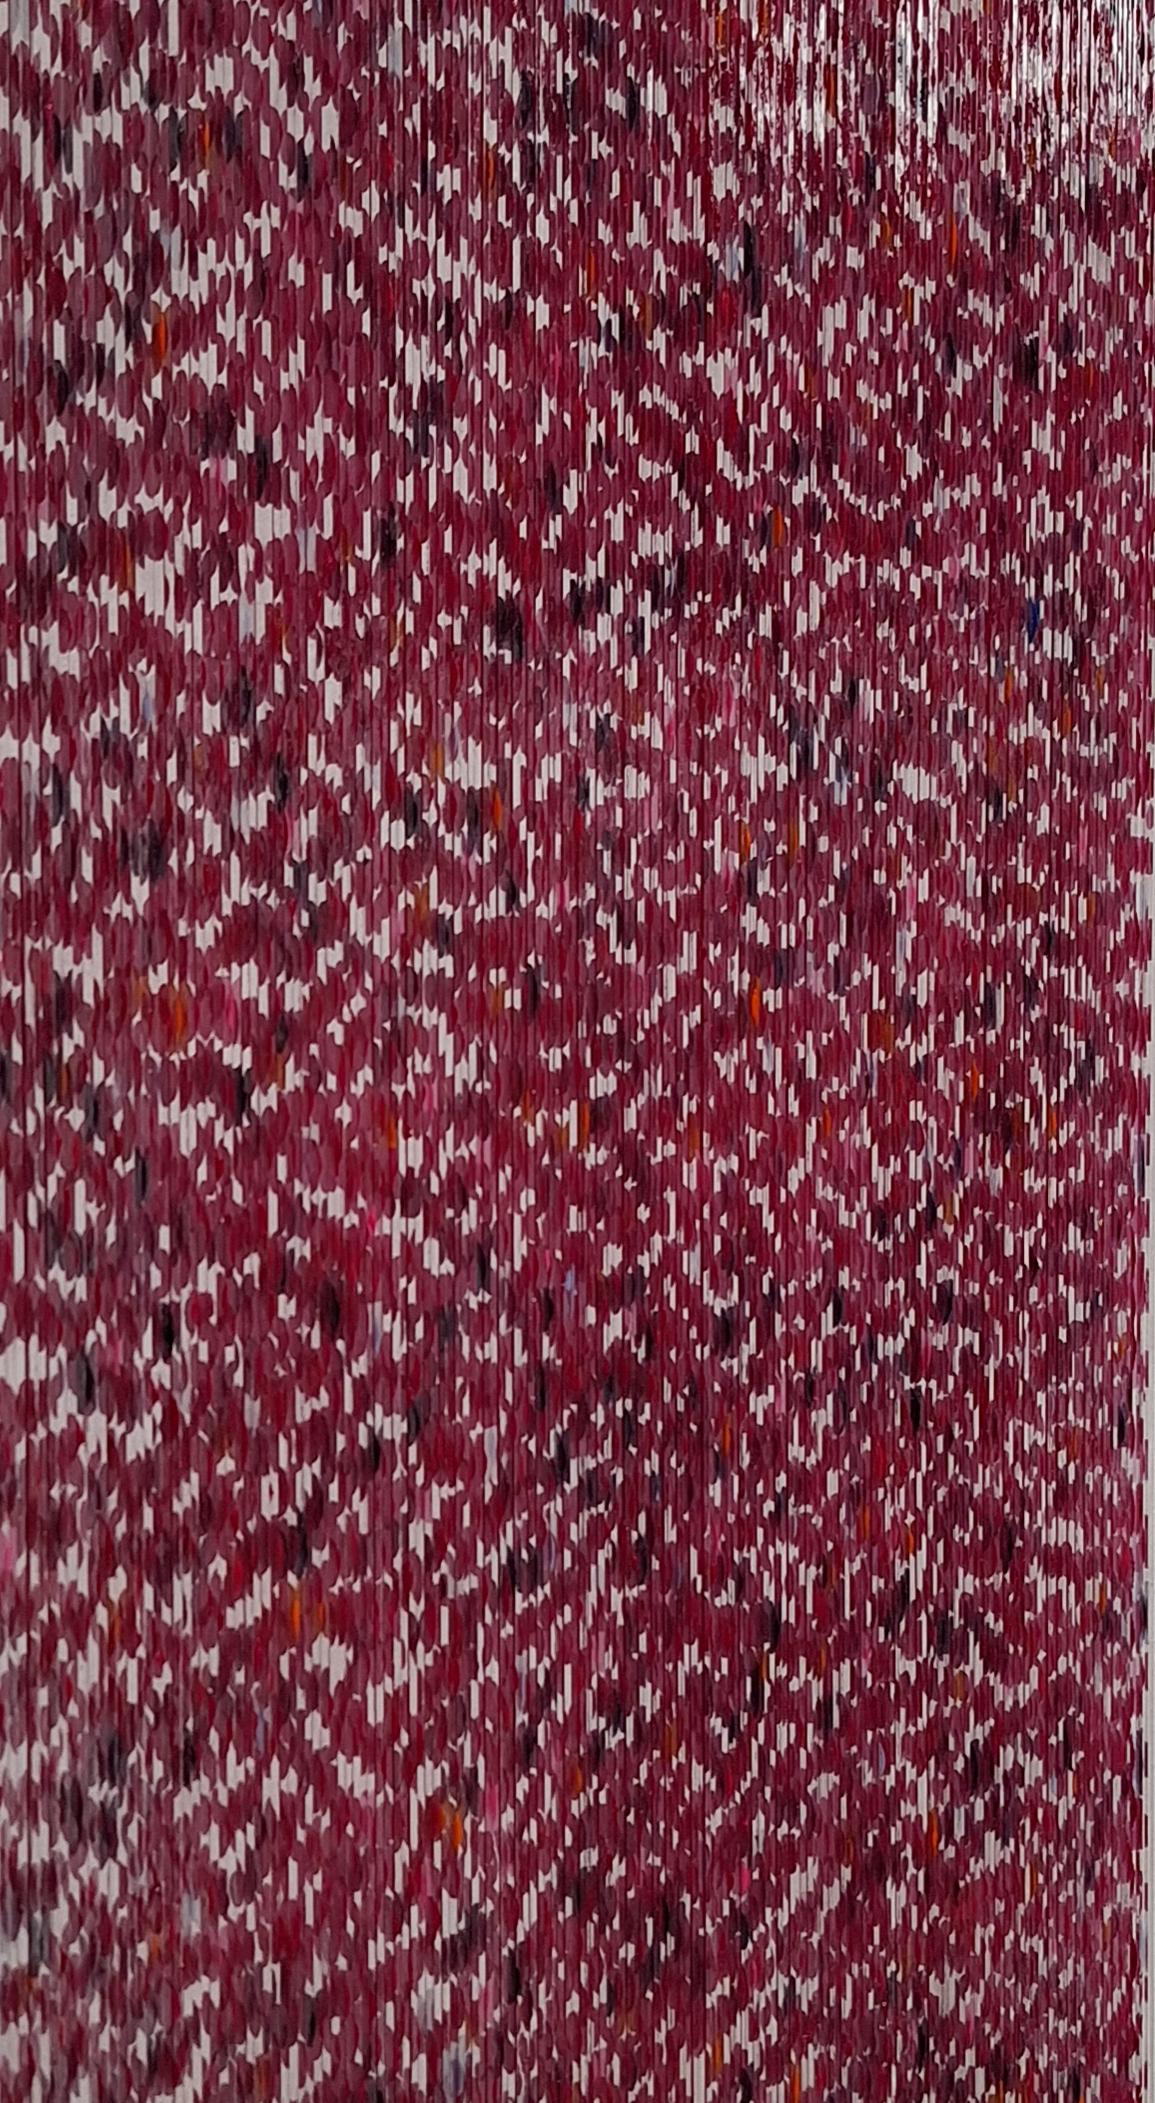 Freddie Michael Soethout Abstract Painting – Farbenlichthaut no. 140 - zeitgenössische moderne organische skulptur malerei relief